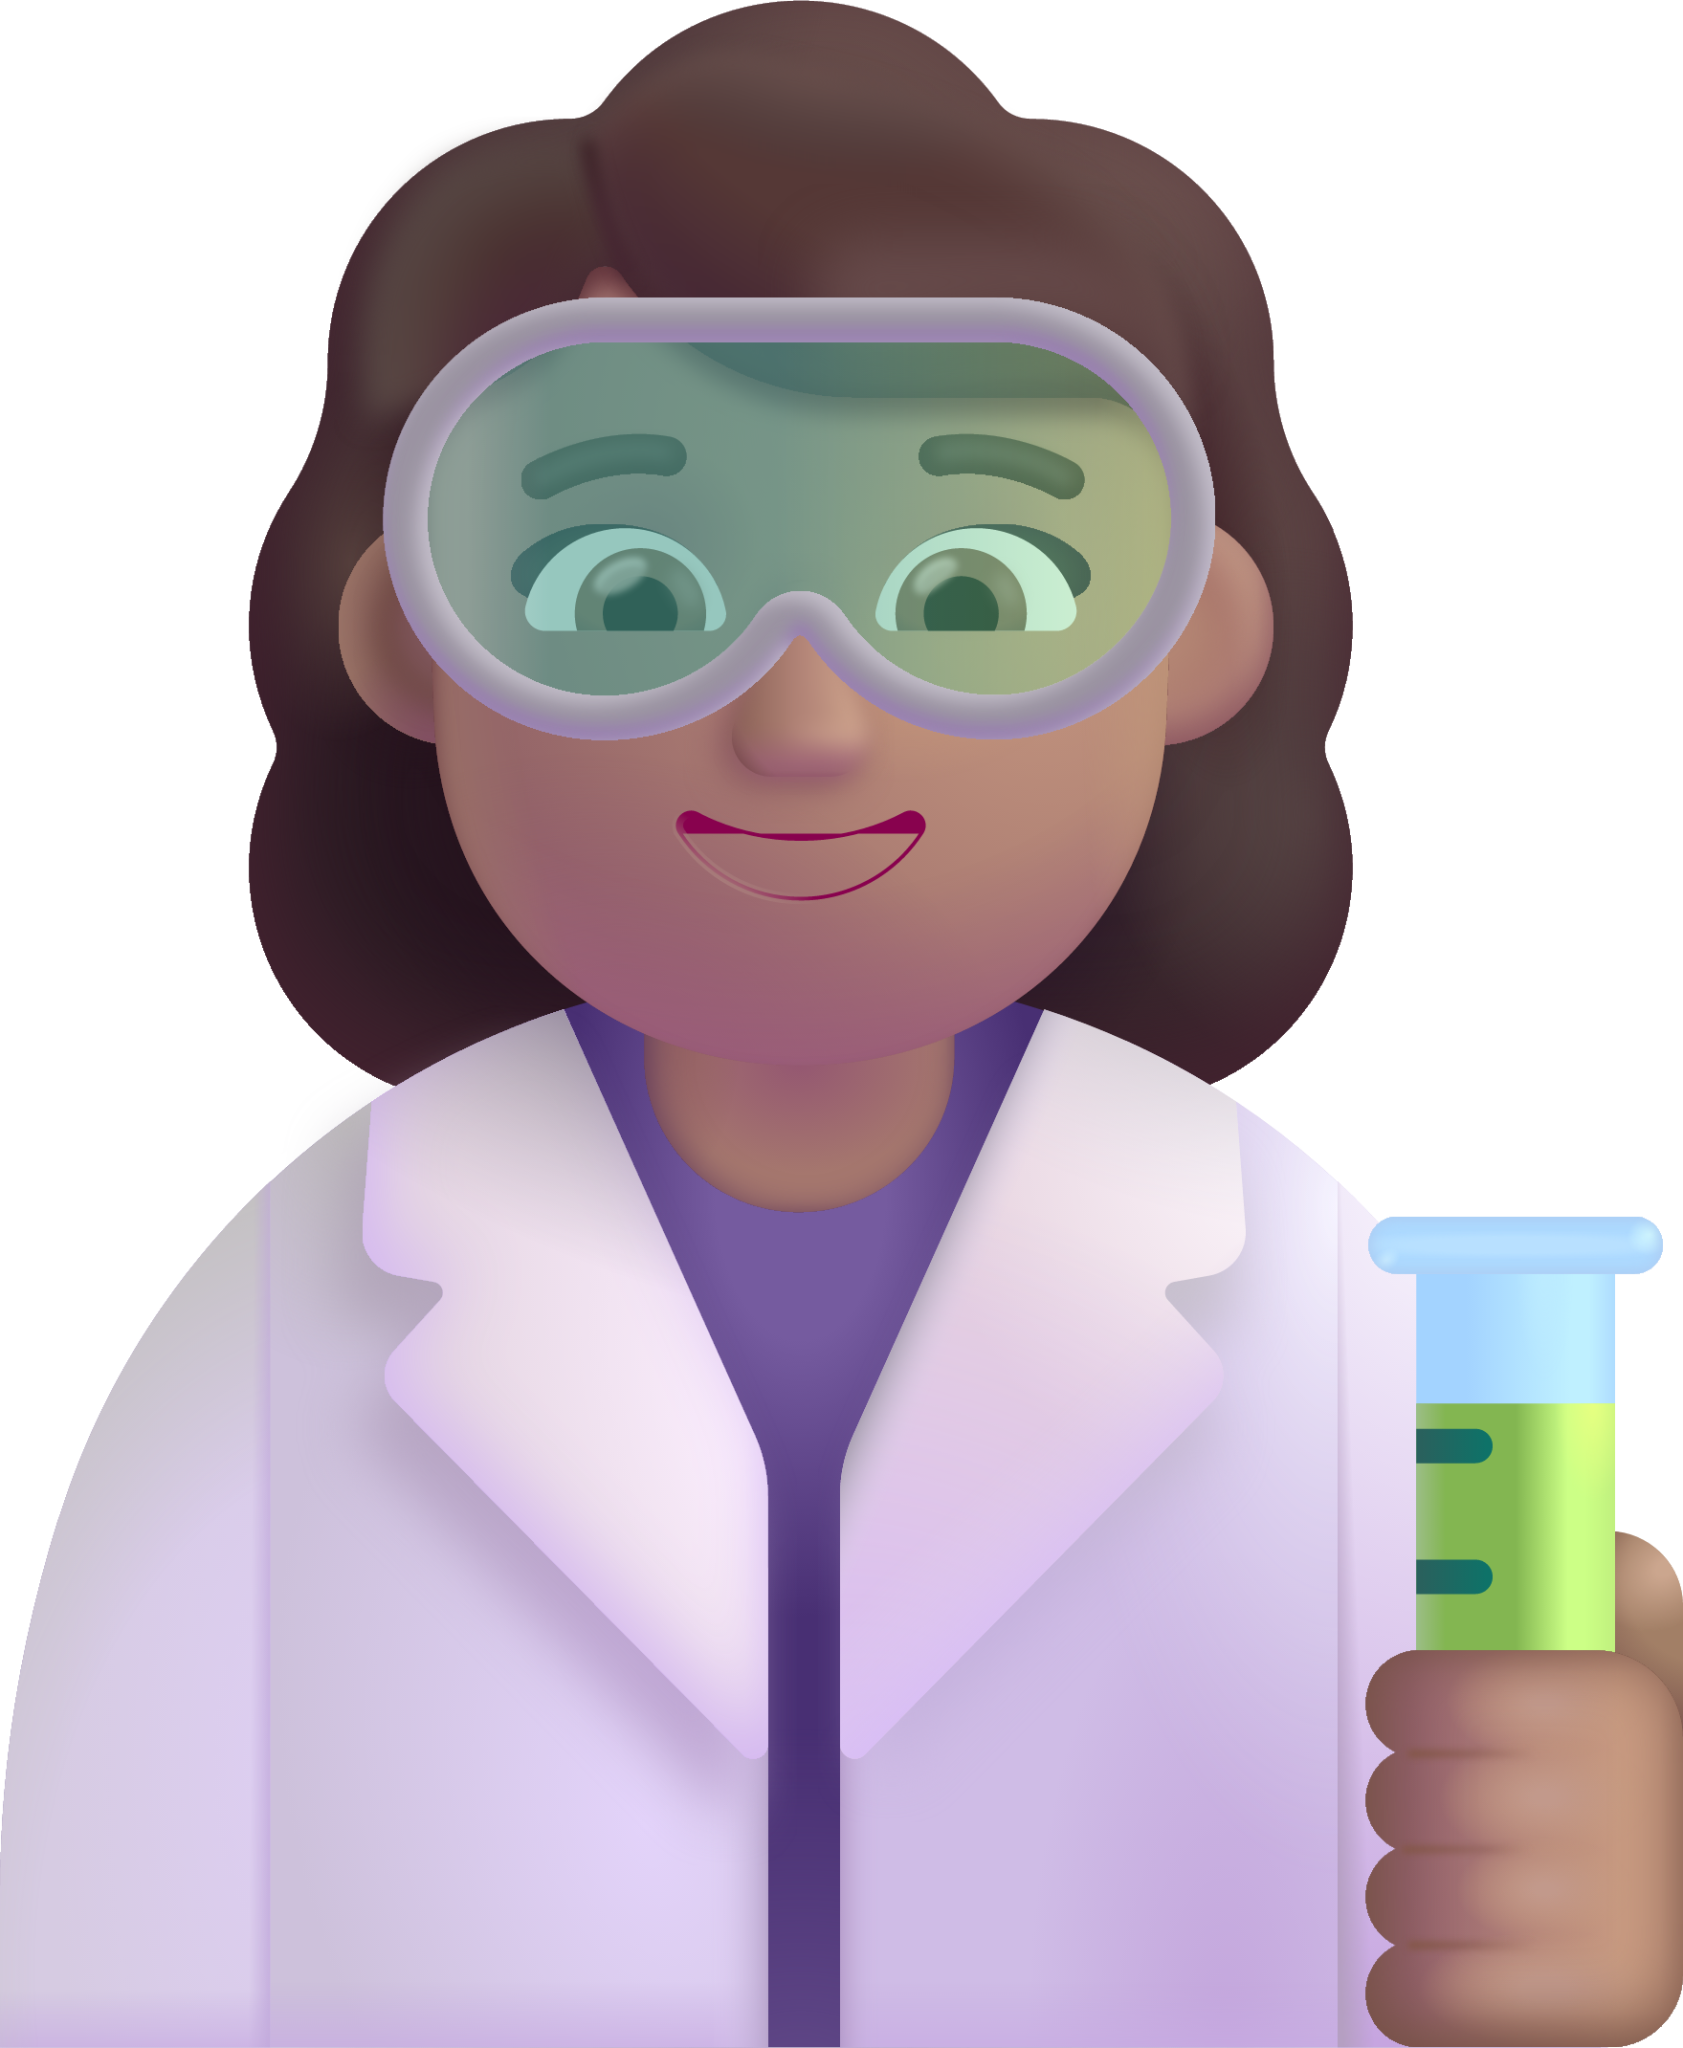 woman scientist medium emoji